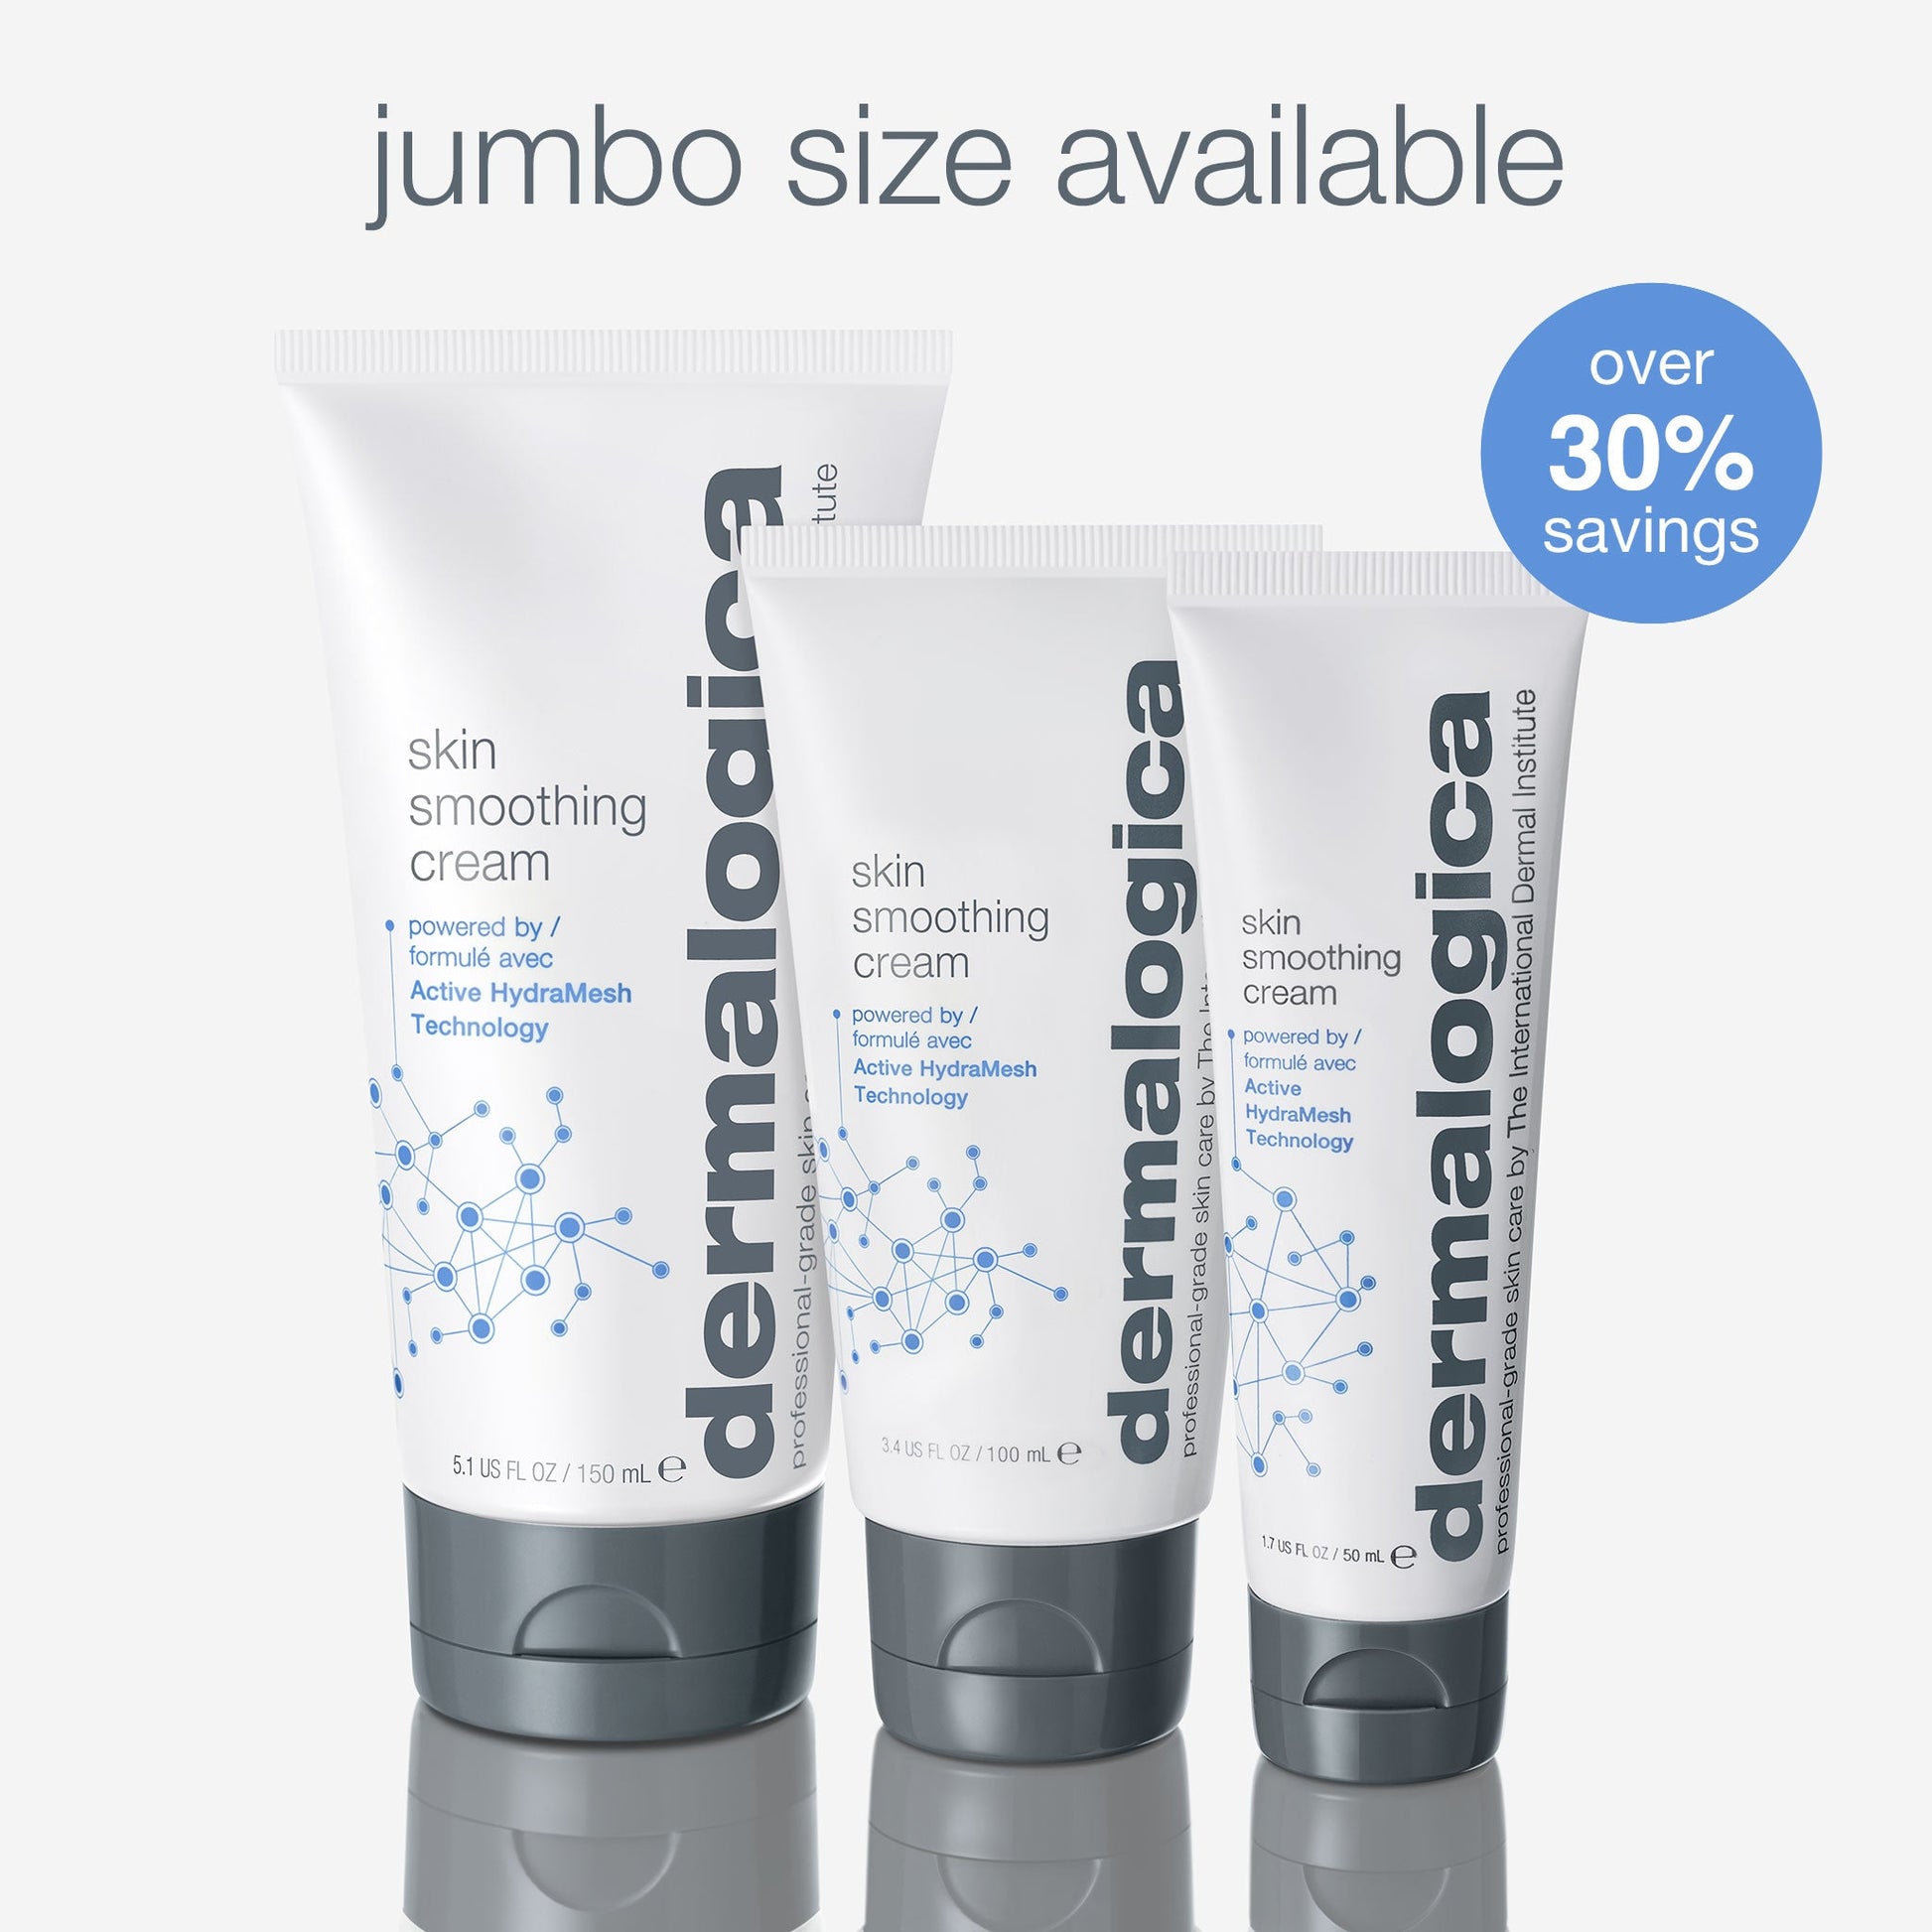 skin smoothing cream jumbo size available